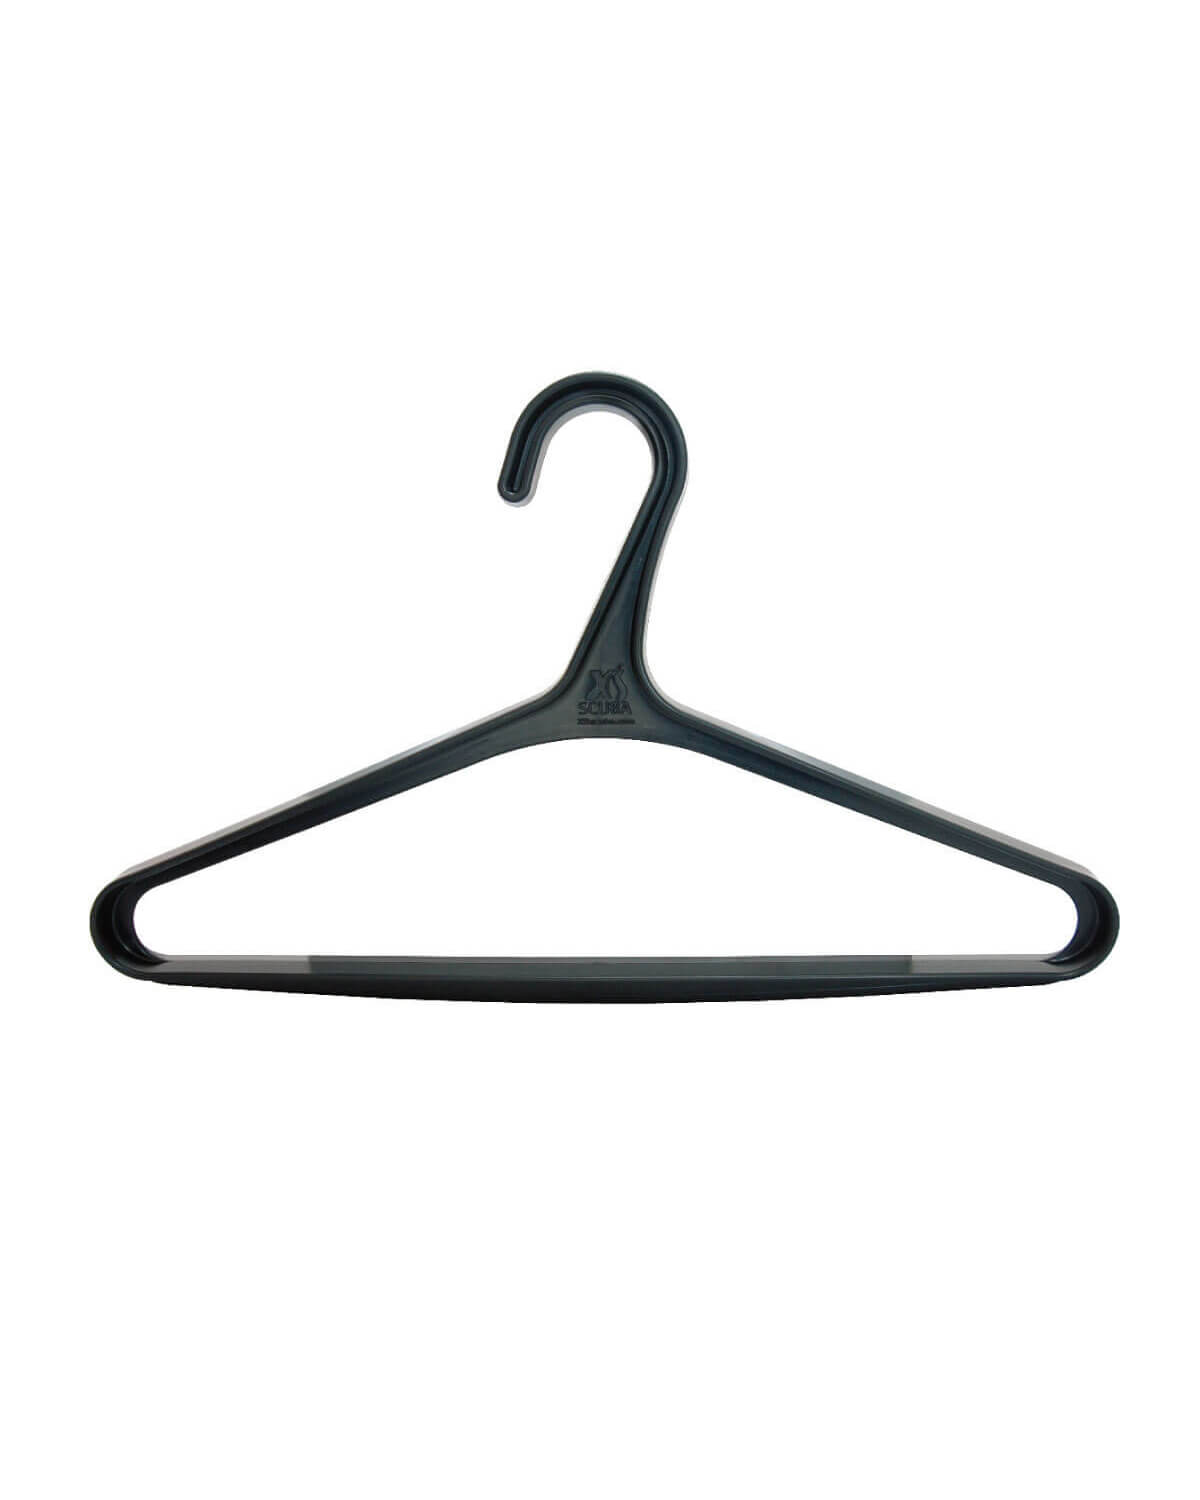 XS SCUBA Basic Wetsuit Hanger